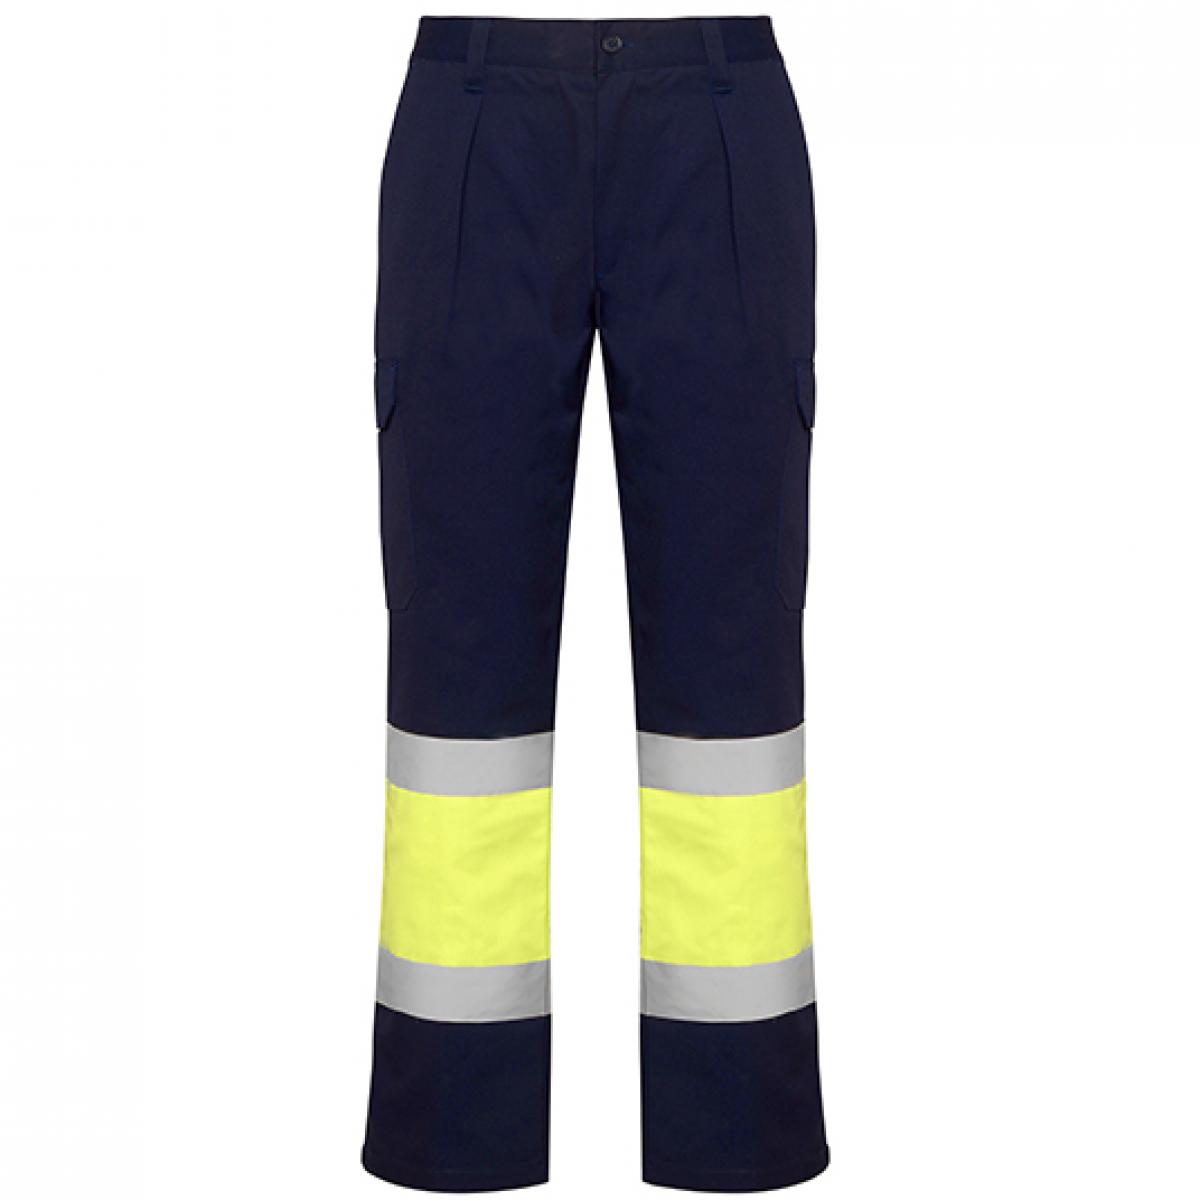 Hersteller: Roly Workwear Herstellernummer: HV9301 Artikelbezeichnung: Soan Hi-Viz Trousers - Arbeitshose mit Reflektionsstreifen Farbe: Navy Blue 55/Fluor Yellow 221